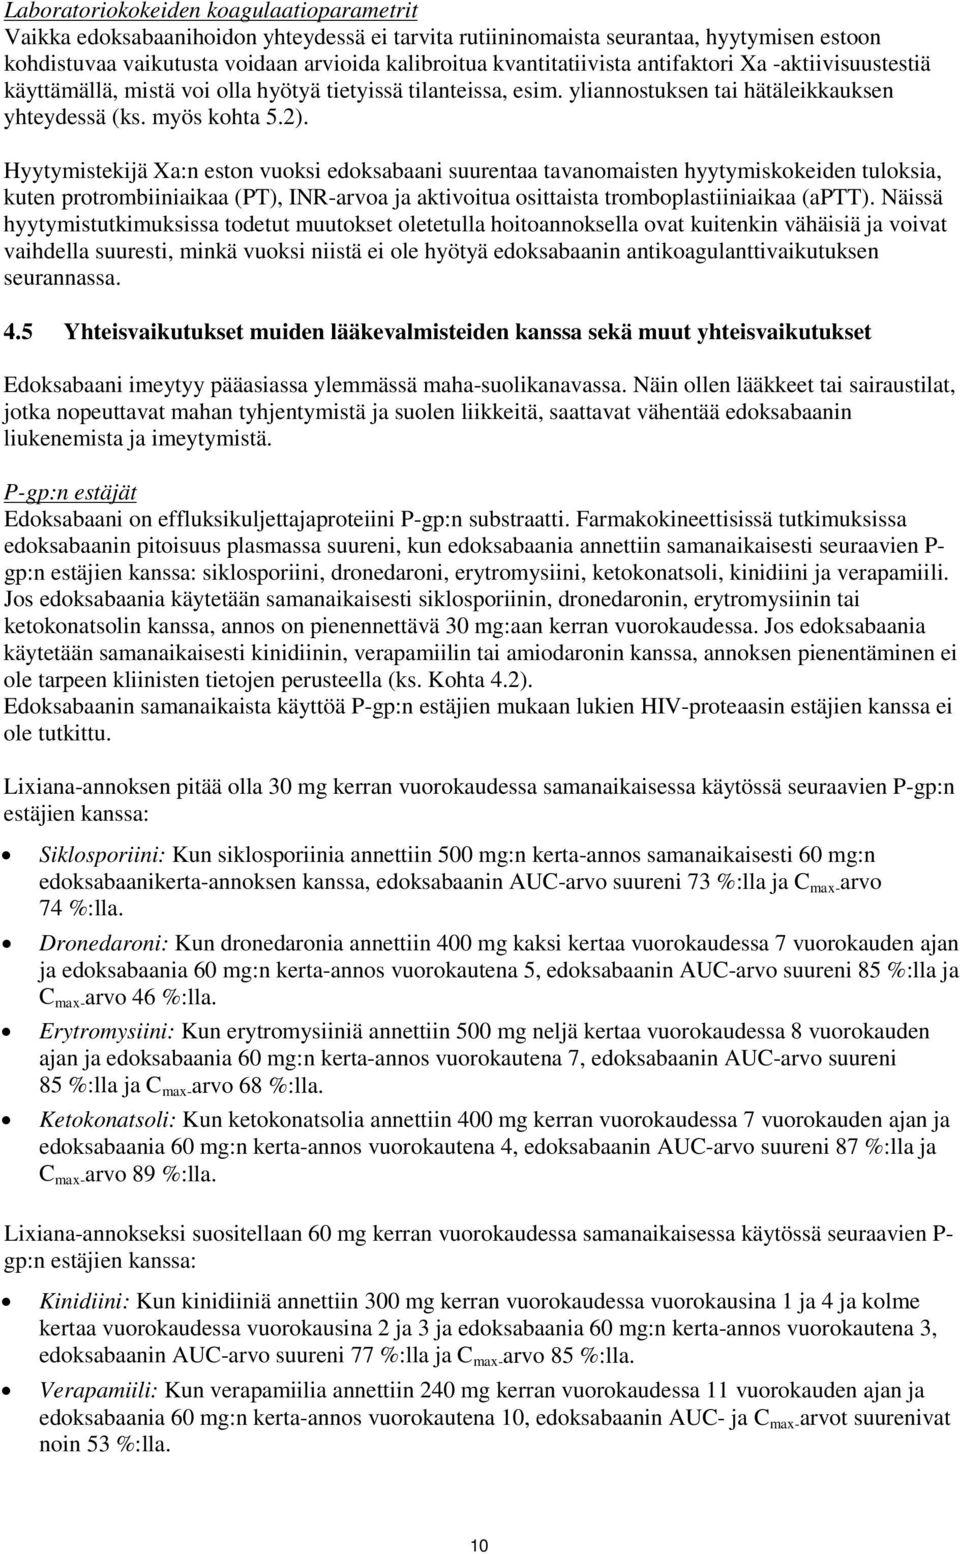 Hyytymistekijä Xa:n eston vuoksi edoksabaani suurentaa tavanomaisten hyytymiskokeiden tuloksia, kuten protrombiiniaikaa (PT), INR-arvoa ja aktivoitua osittaista tromboplastiiniaikaa (aptt).